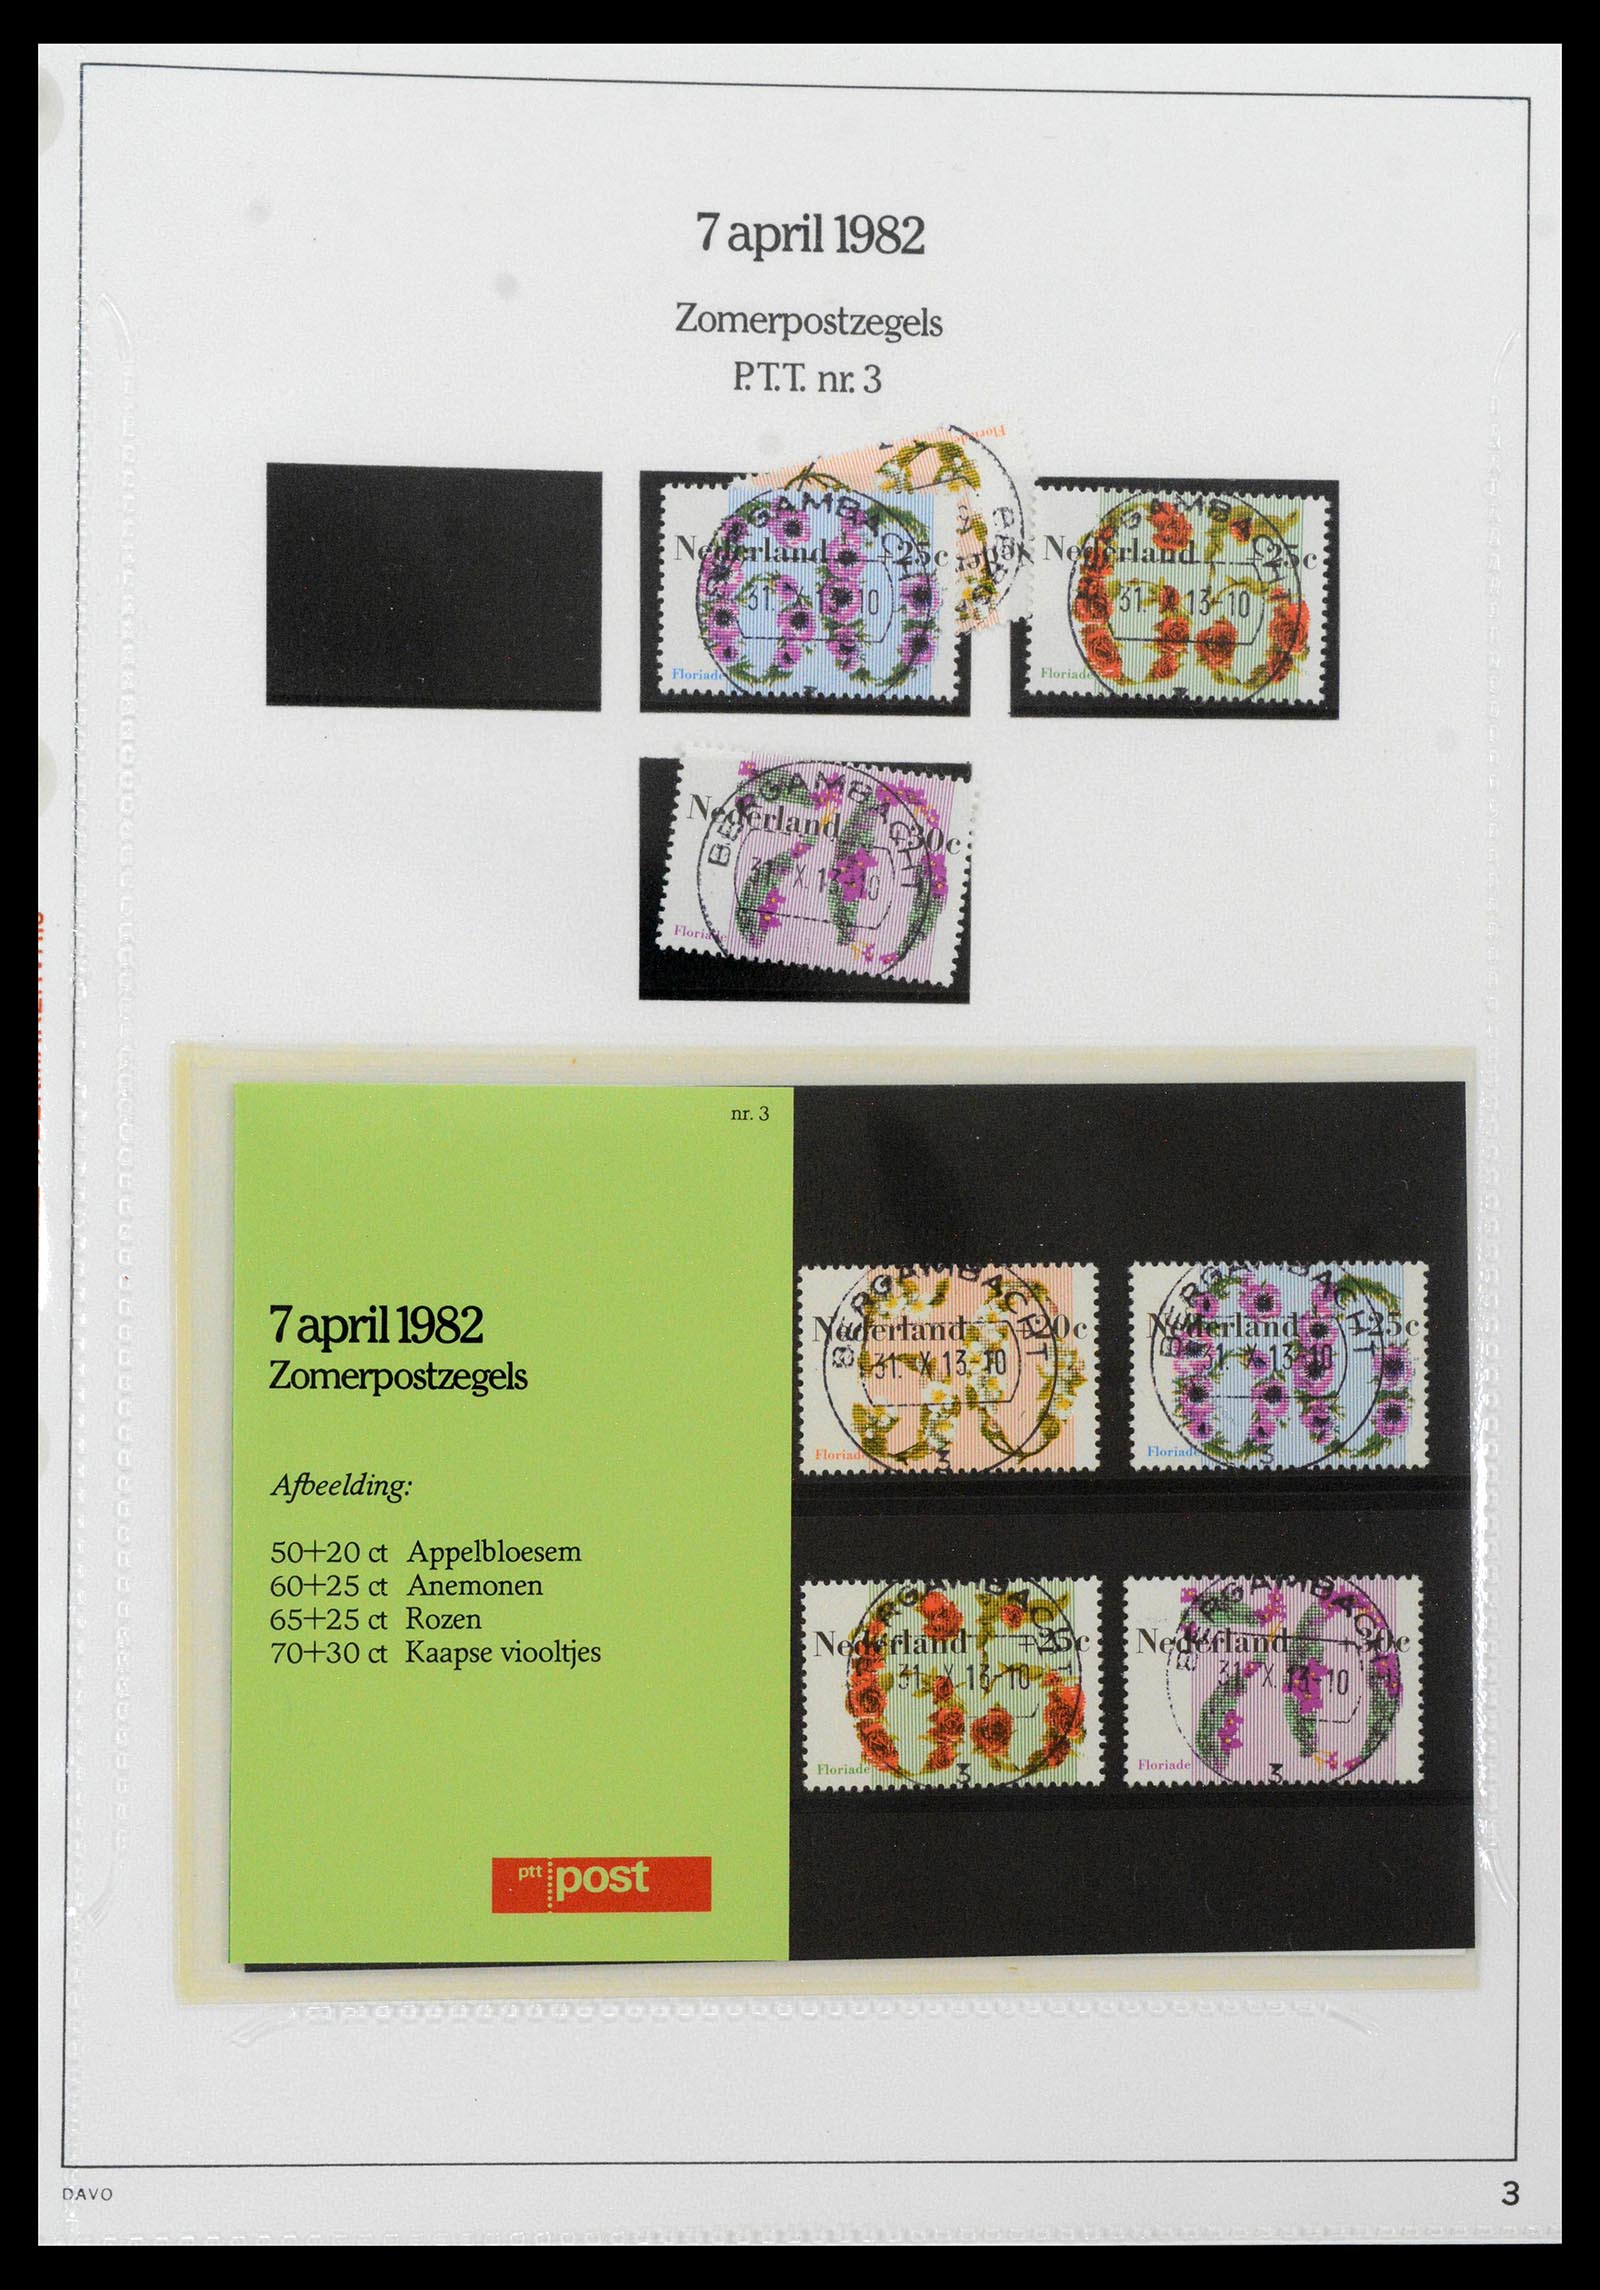 39121 0003 - Stamp collection 39121 Netherlands presentationpacks 1982-2001.